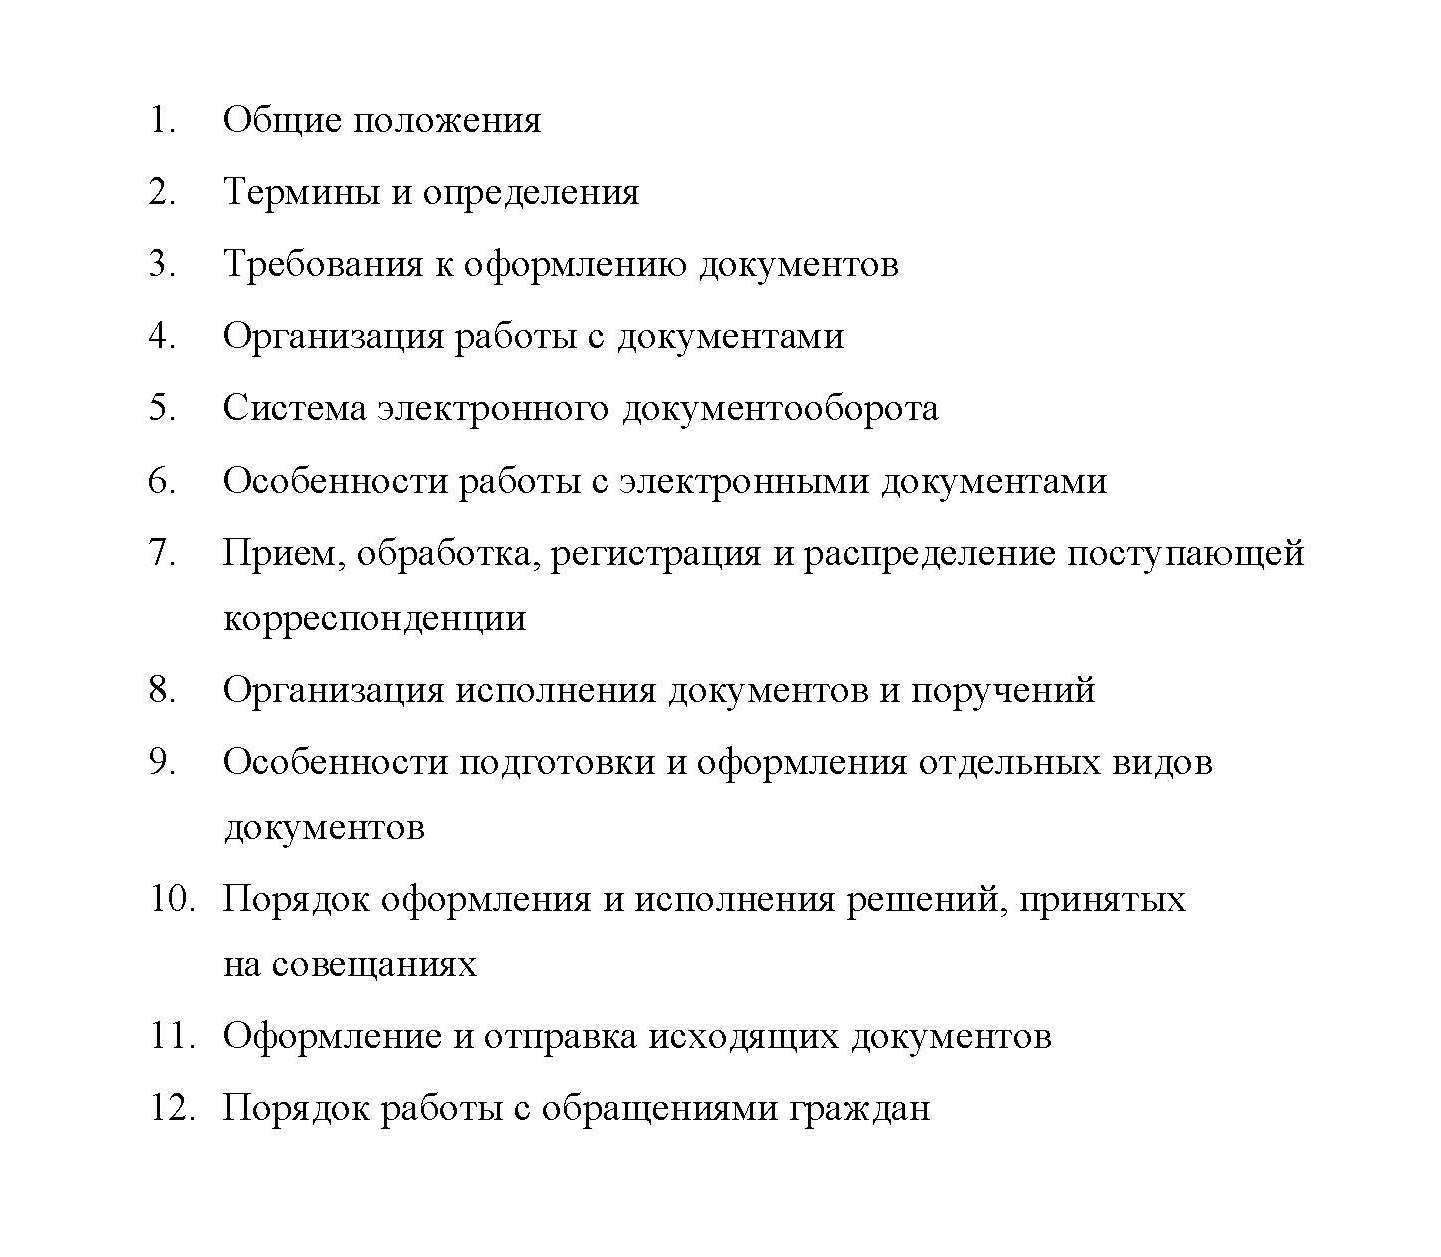 Инструкция банка россии по делопроизводству